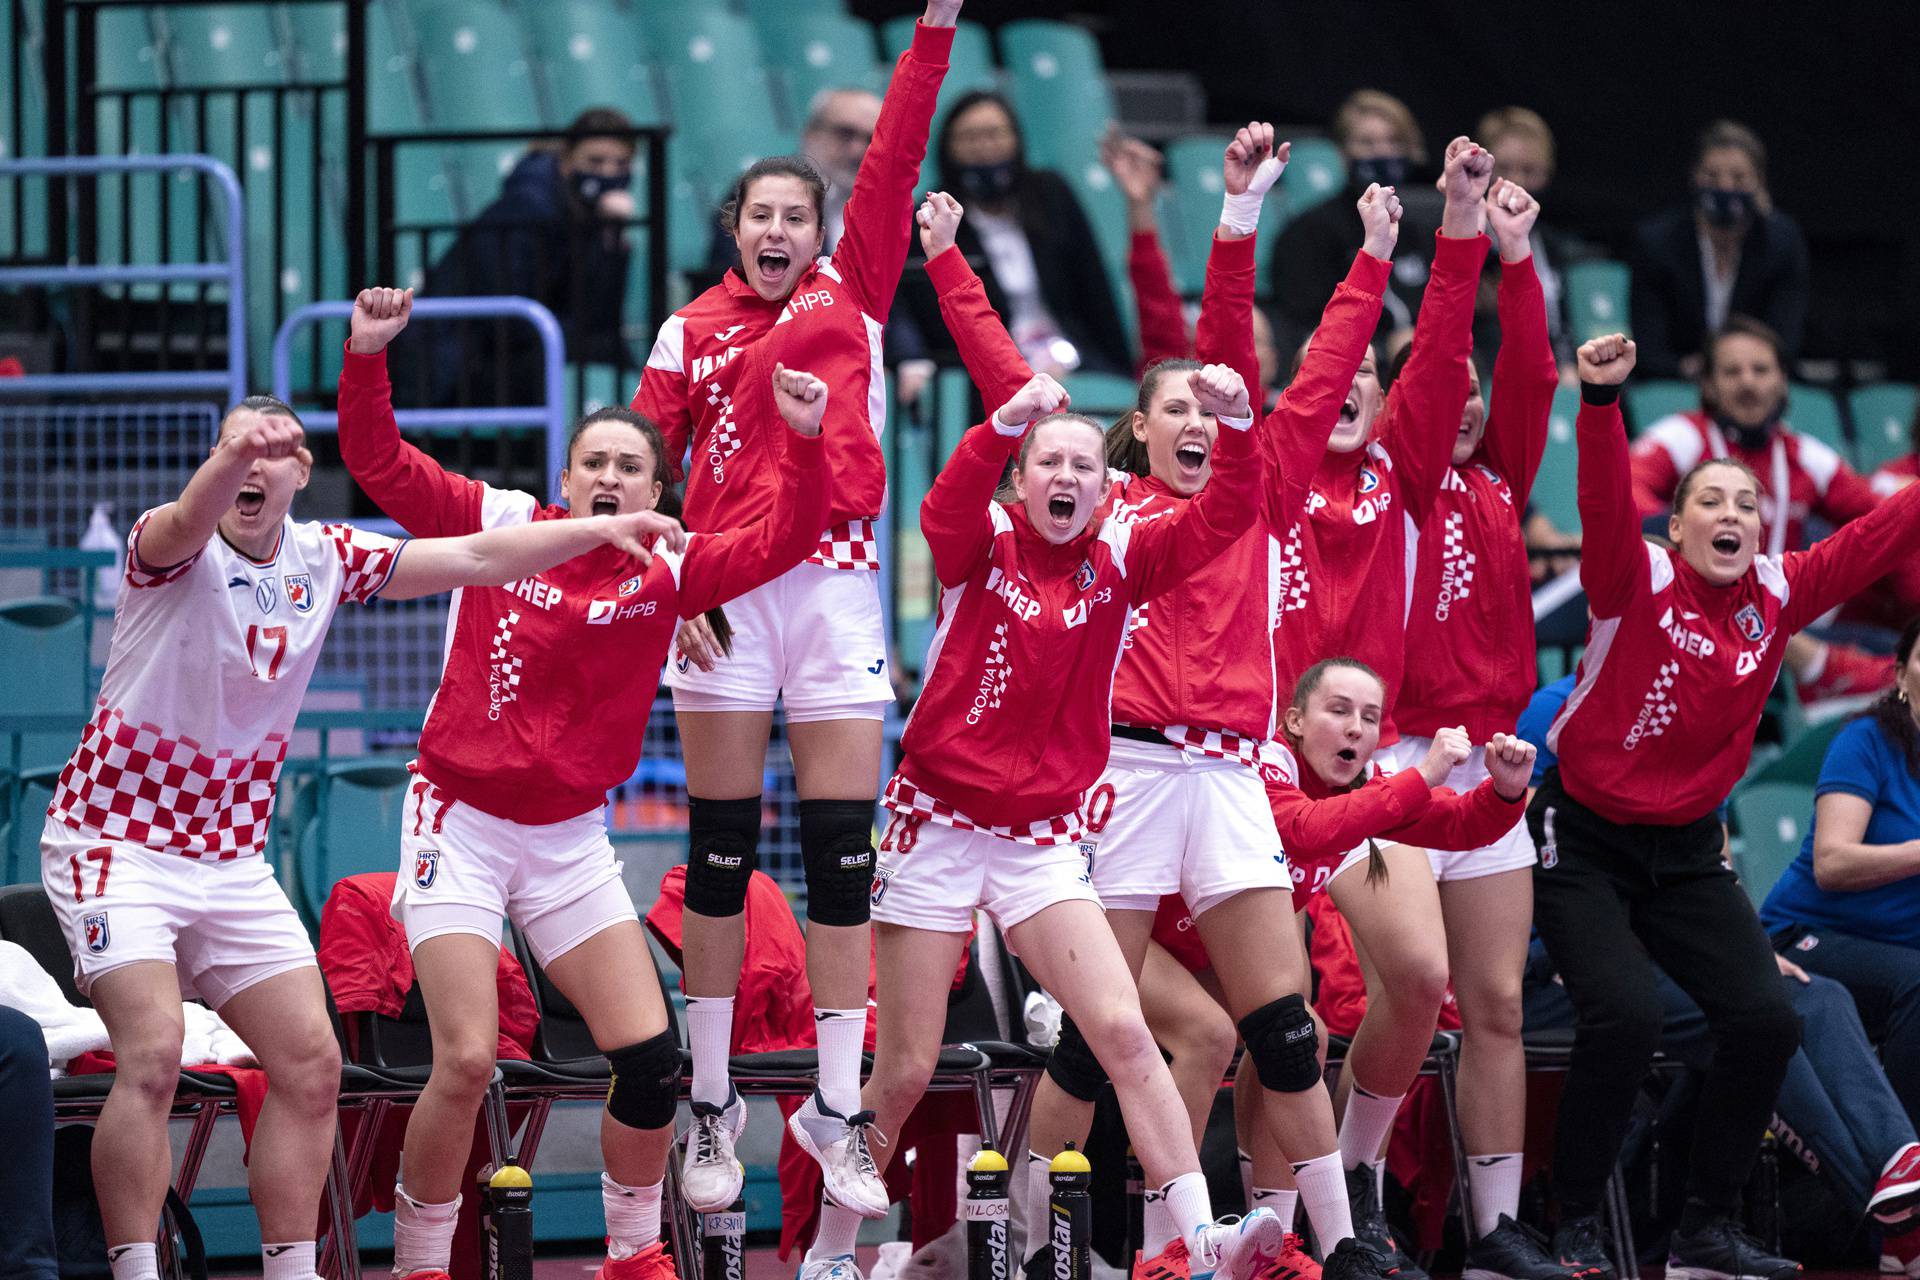 EHF Euro Women's Handball Championship - Main Round Group 2 - Croatia v Germany